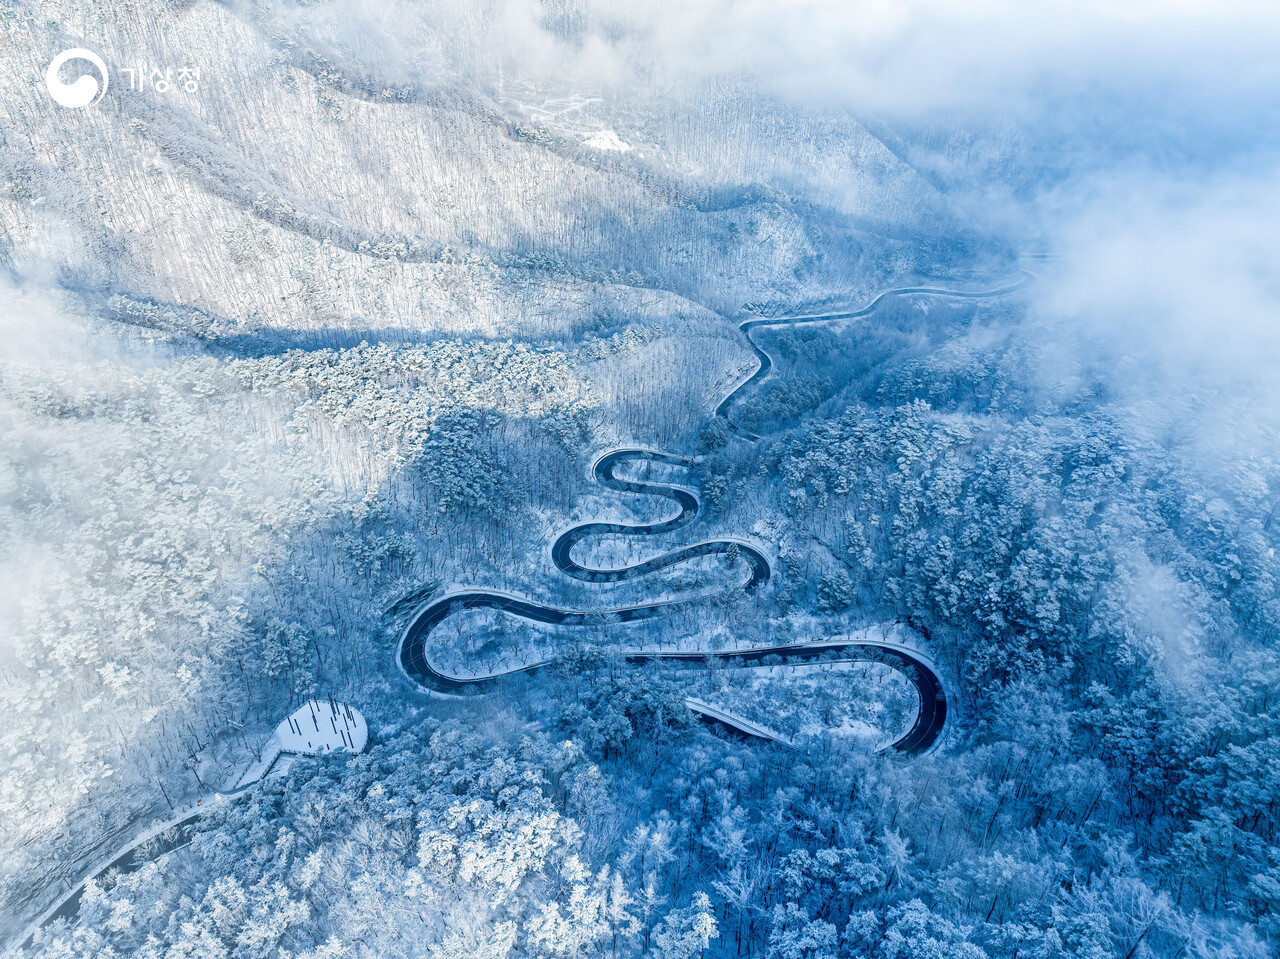 굽이굽이 고갯길의 설경을 담은 이상운의 ‘보발재의 겨울’. 출처=기상청